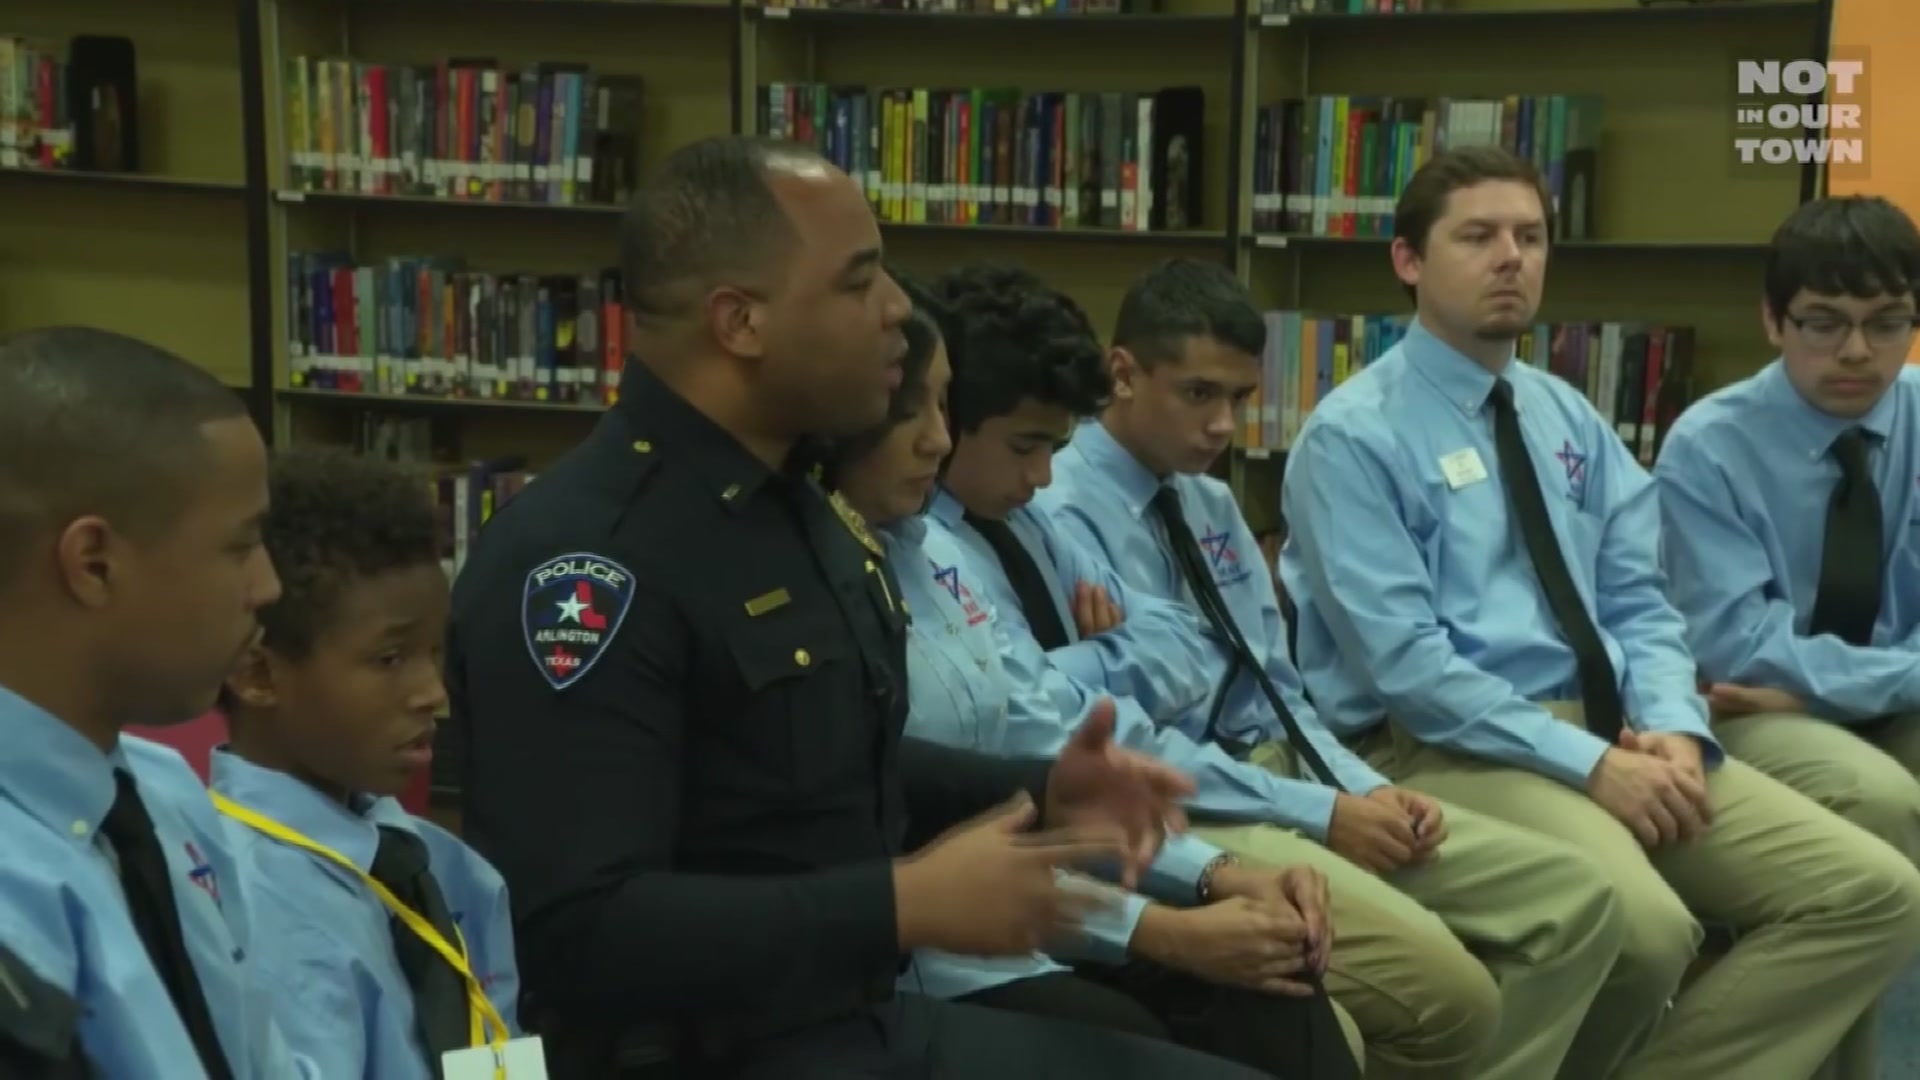 Arlington Recognized in DOJ Video on Police-Race Relations